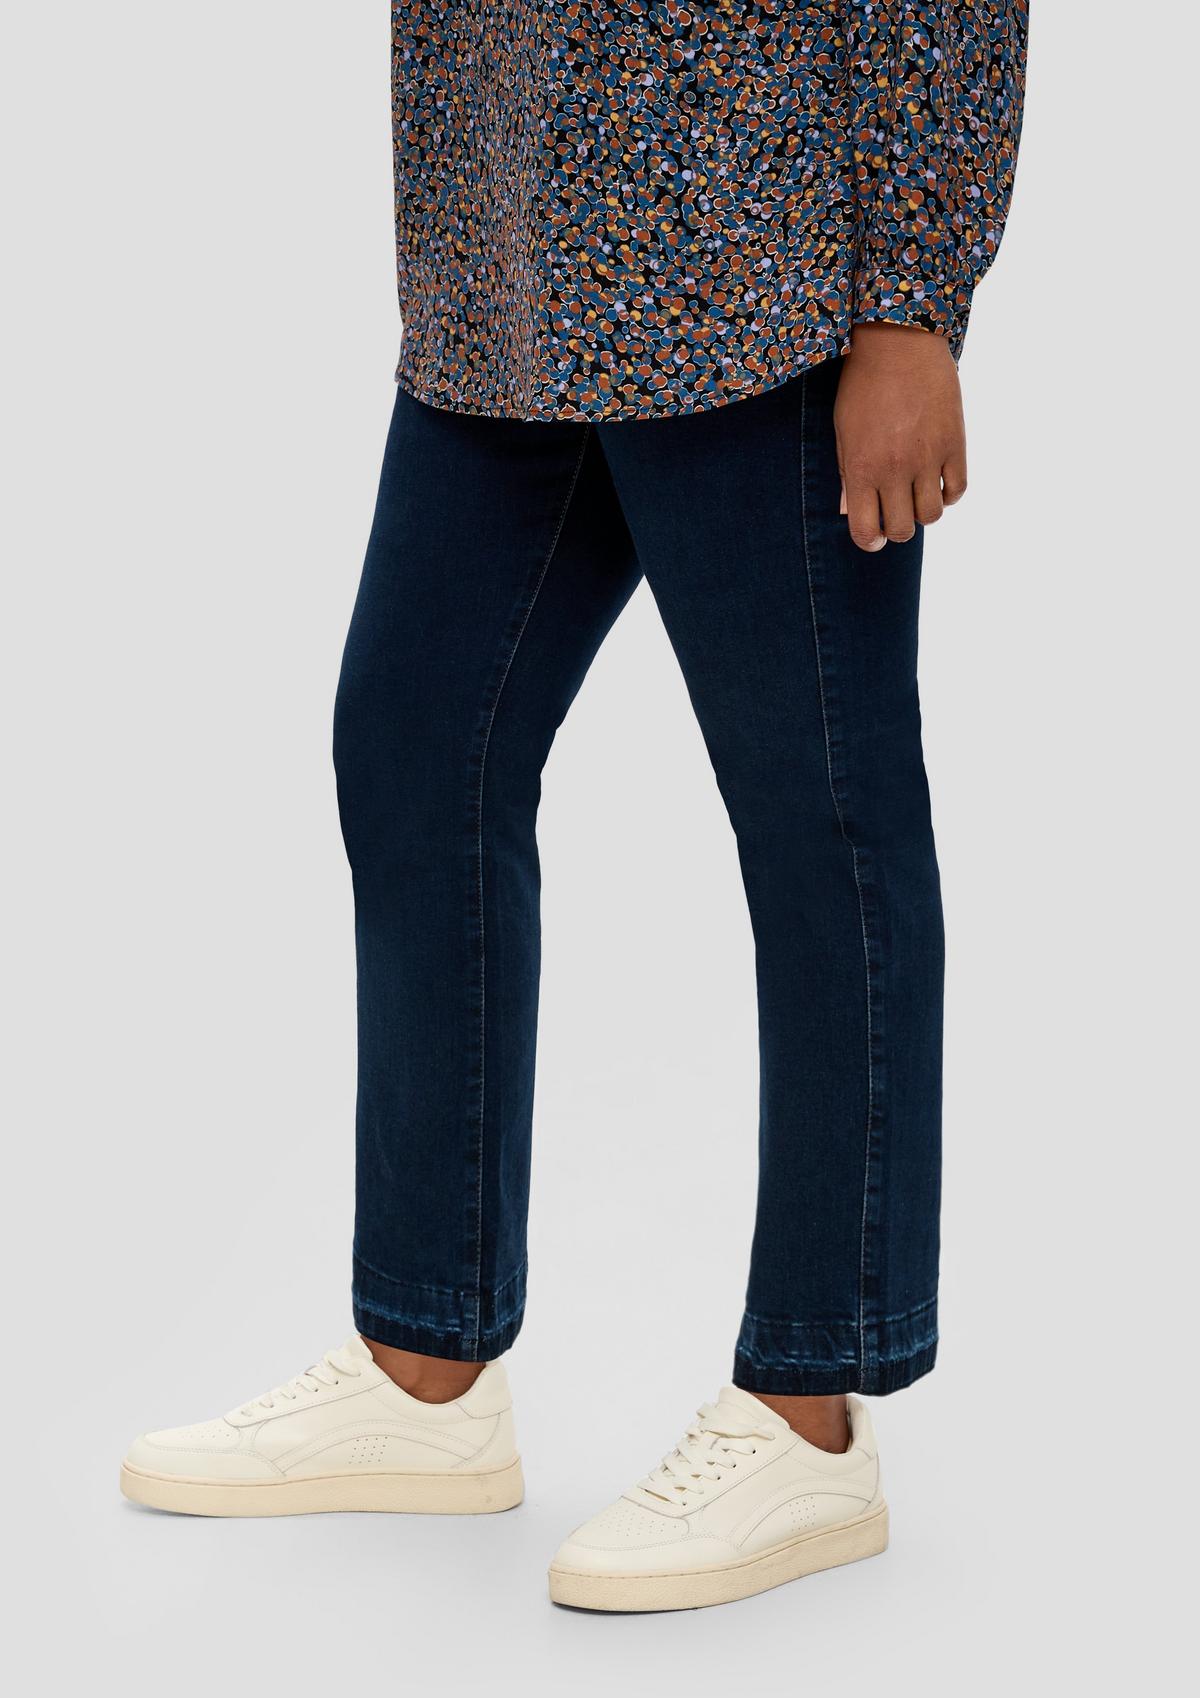 s.Oliver Jeans hlače / kroj Regular Fit / Mid Rise / kroj Slim Leg / barvani šivi